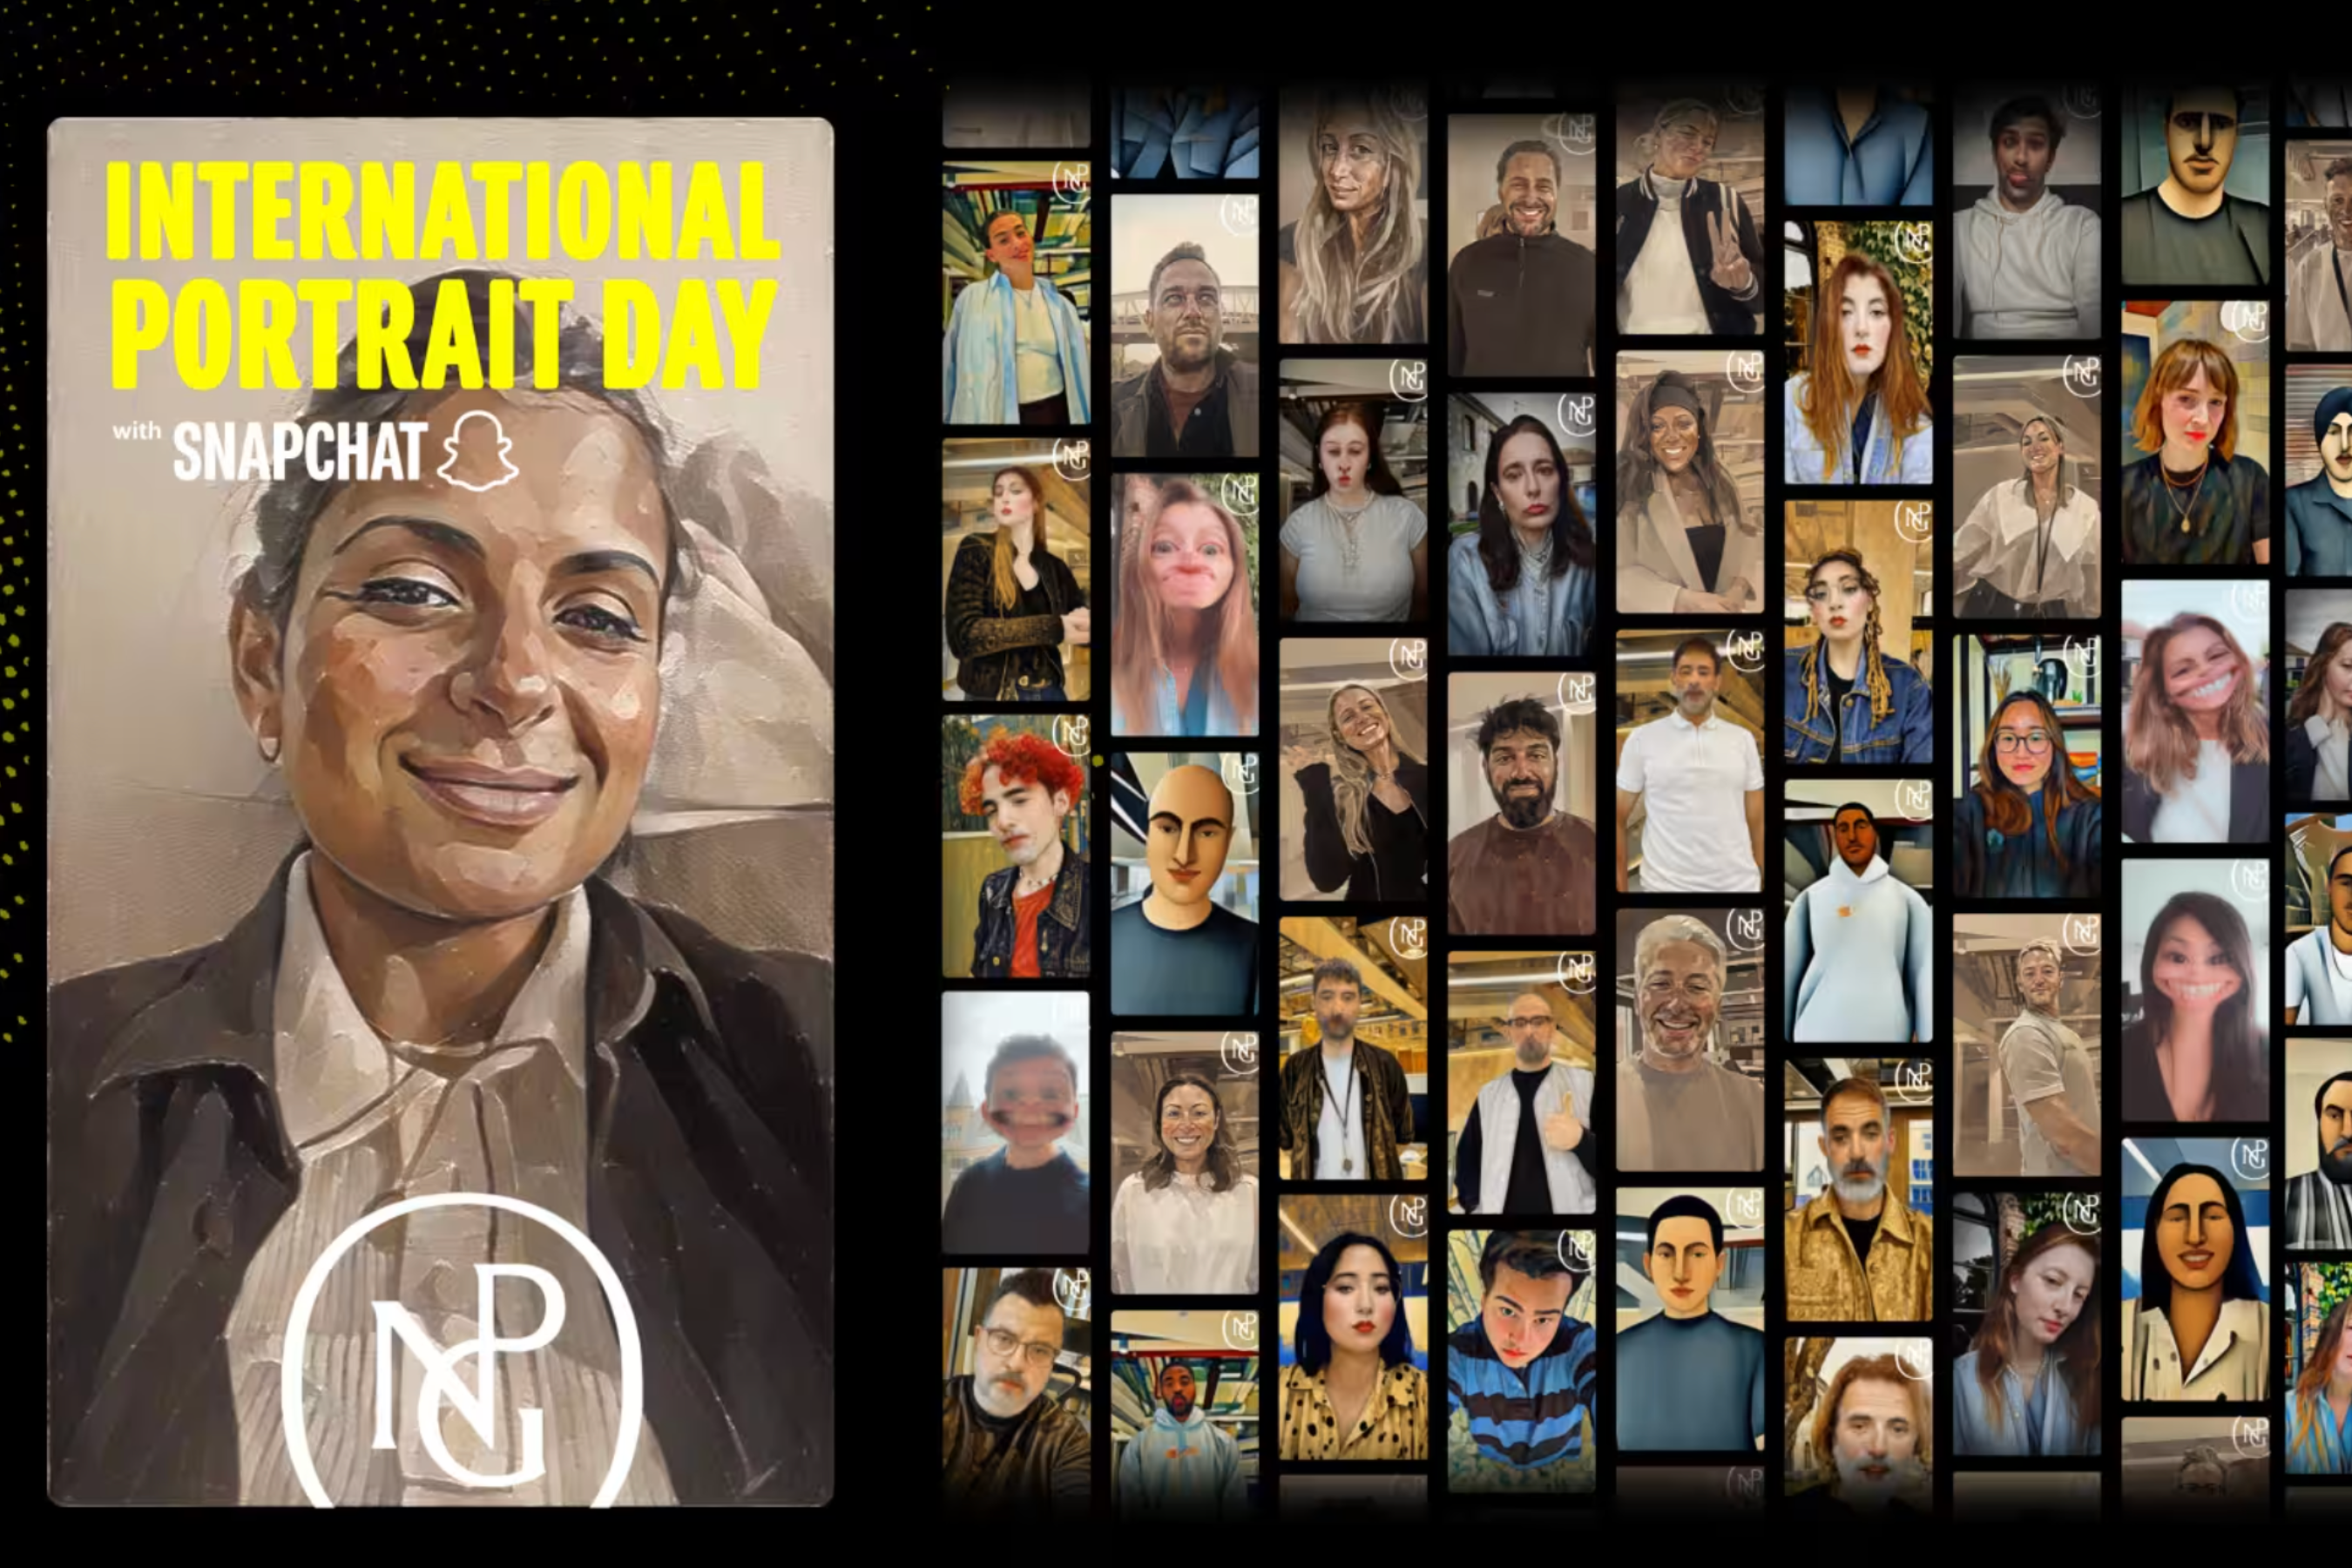 Snapchat, ikonik portre tarzlarından ilham alan Lensler yaratmak için Londra Ulusal Portre Galerisi ile iş birliği yaptı |  Resim kredisi - Snap - Yapay zeka AR ile buluşuyor: Snapchat yeni nesil lensler için güçlü araçları tanıtıyor